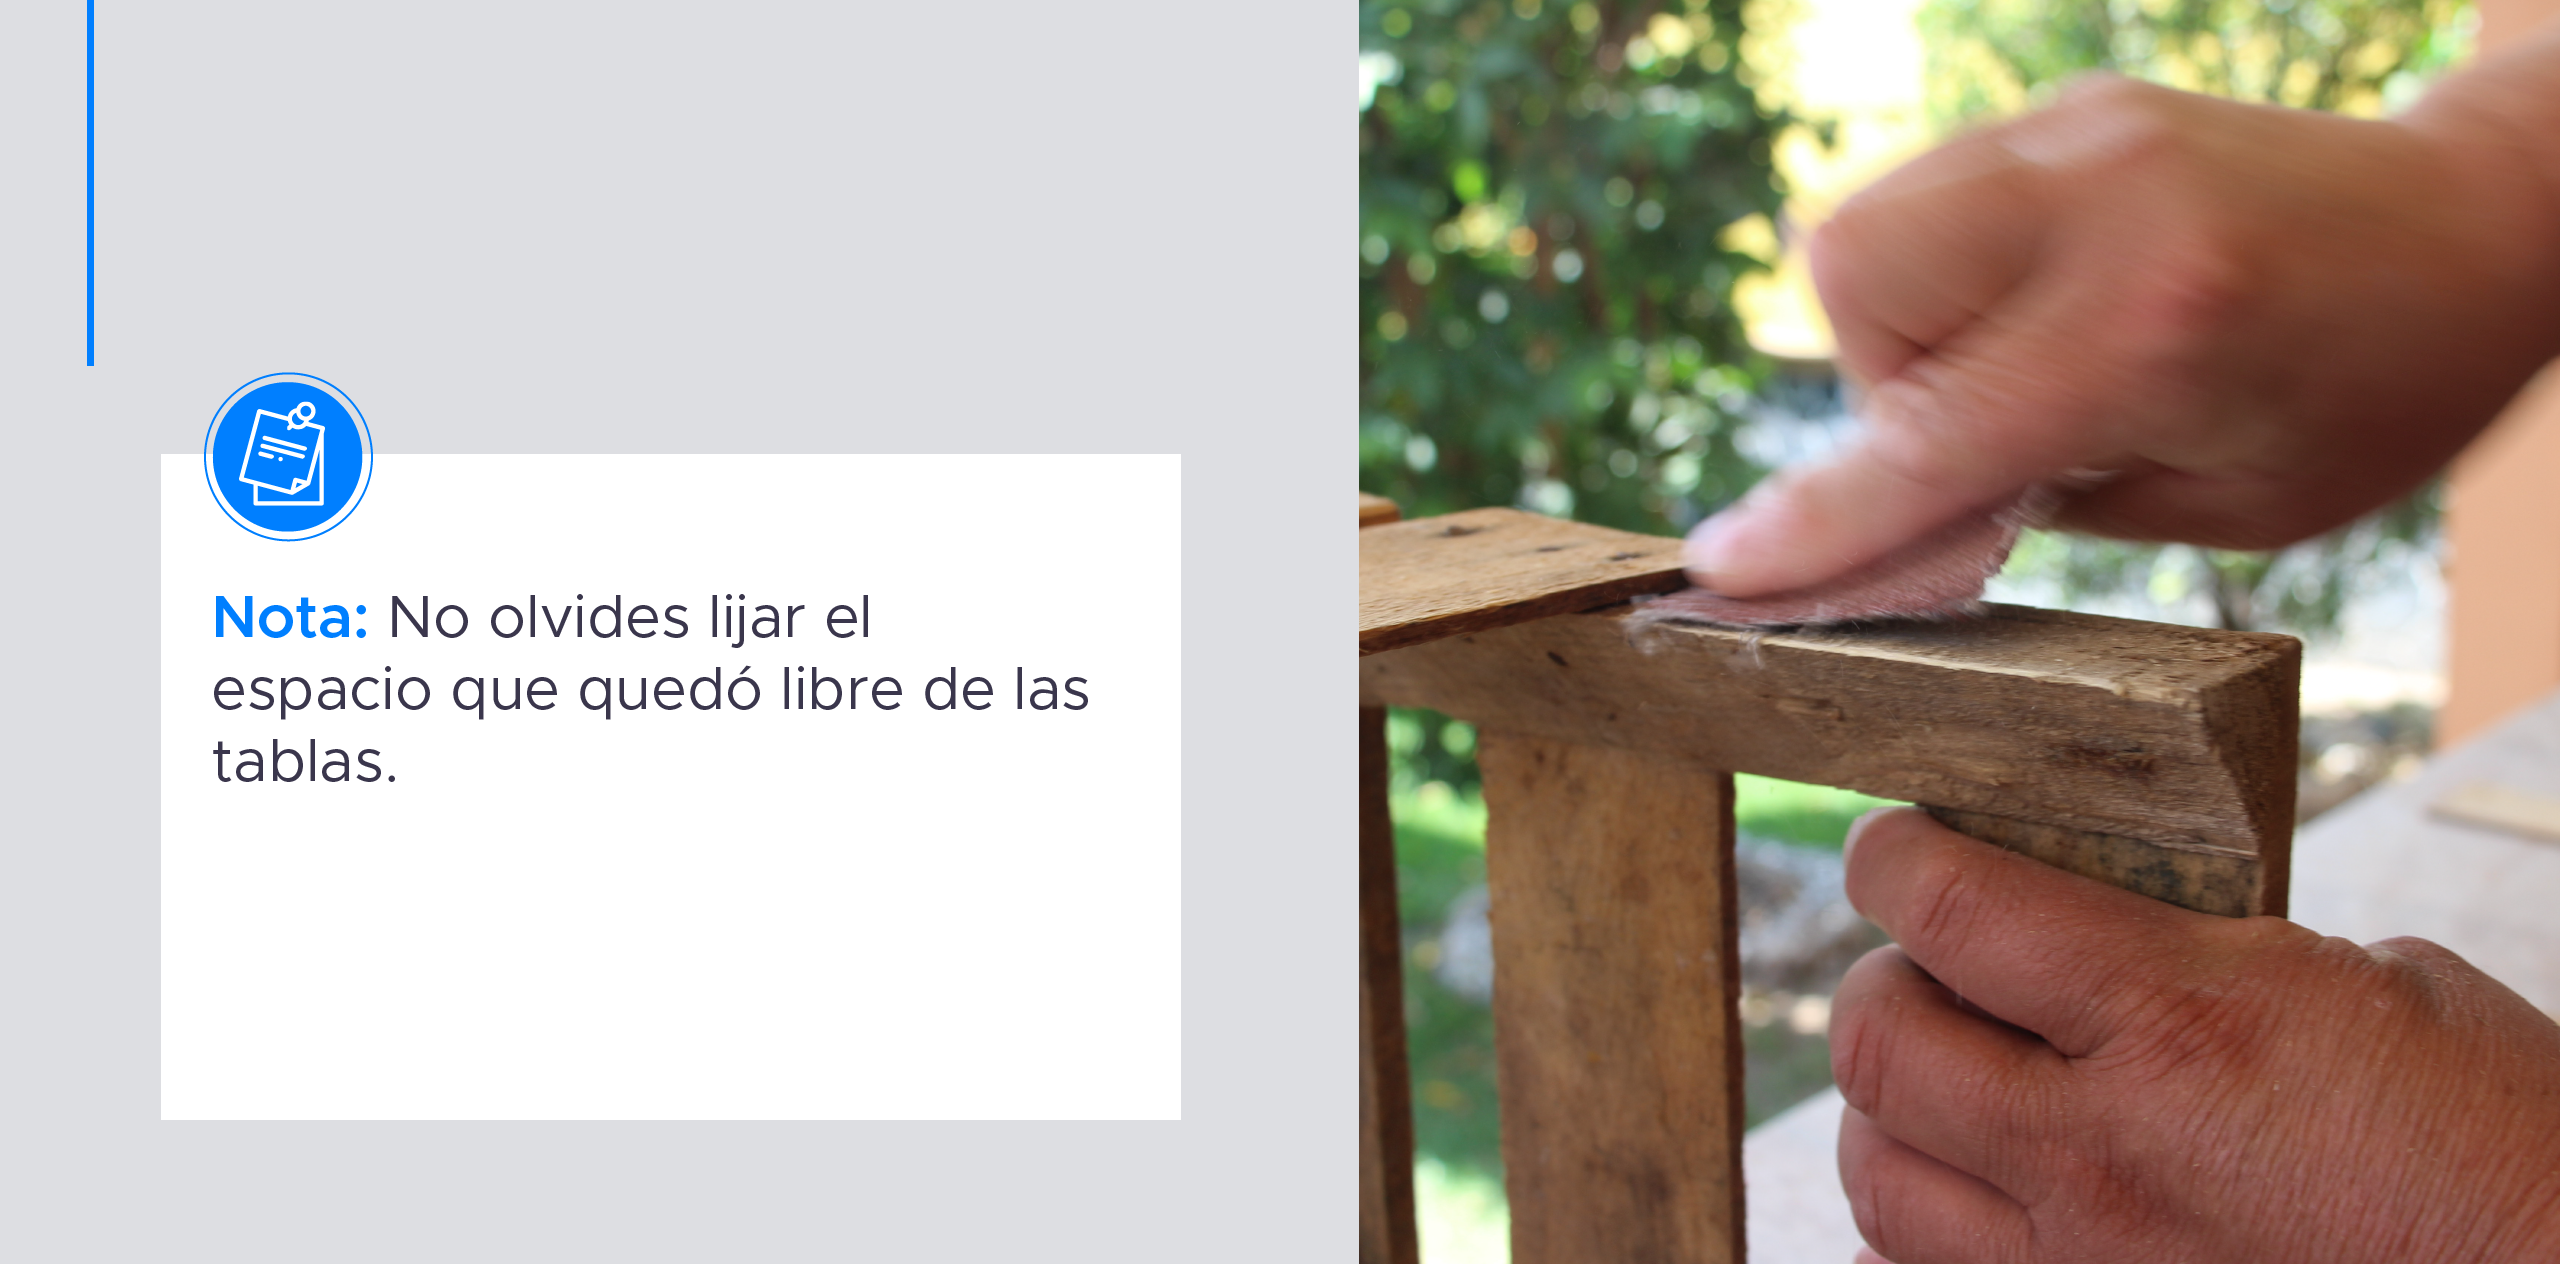 ¡Haz un frutero con huacales de madera! En KeObra te mostramos cómo hacer tus propios muebles con huacales paso a paso.